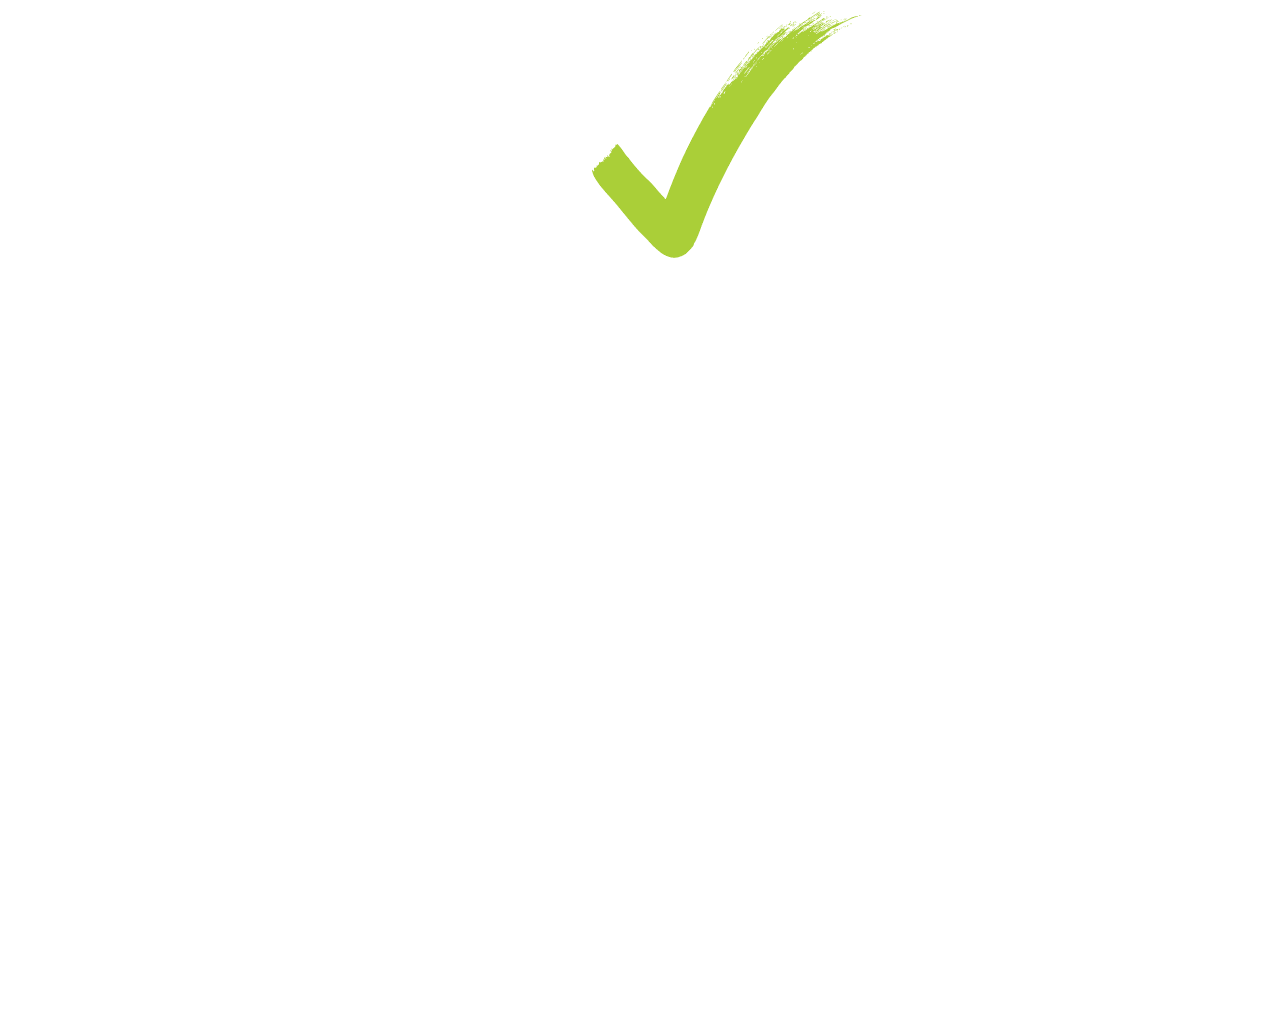 eCommerce Europe